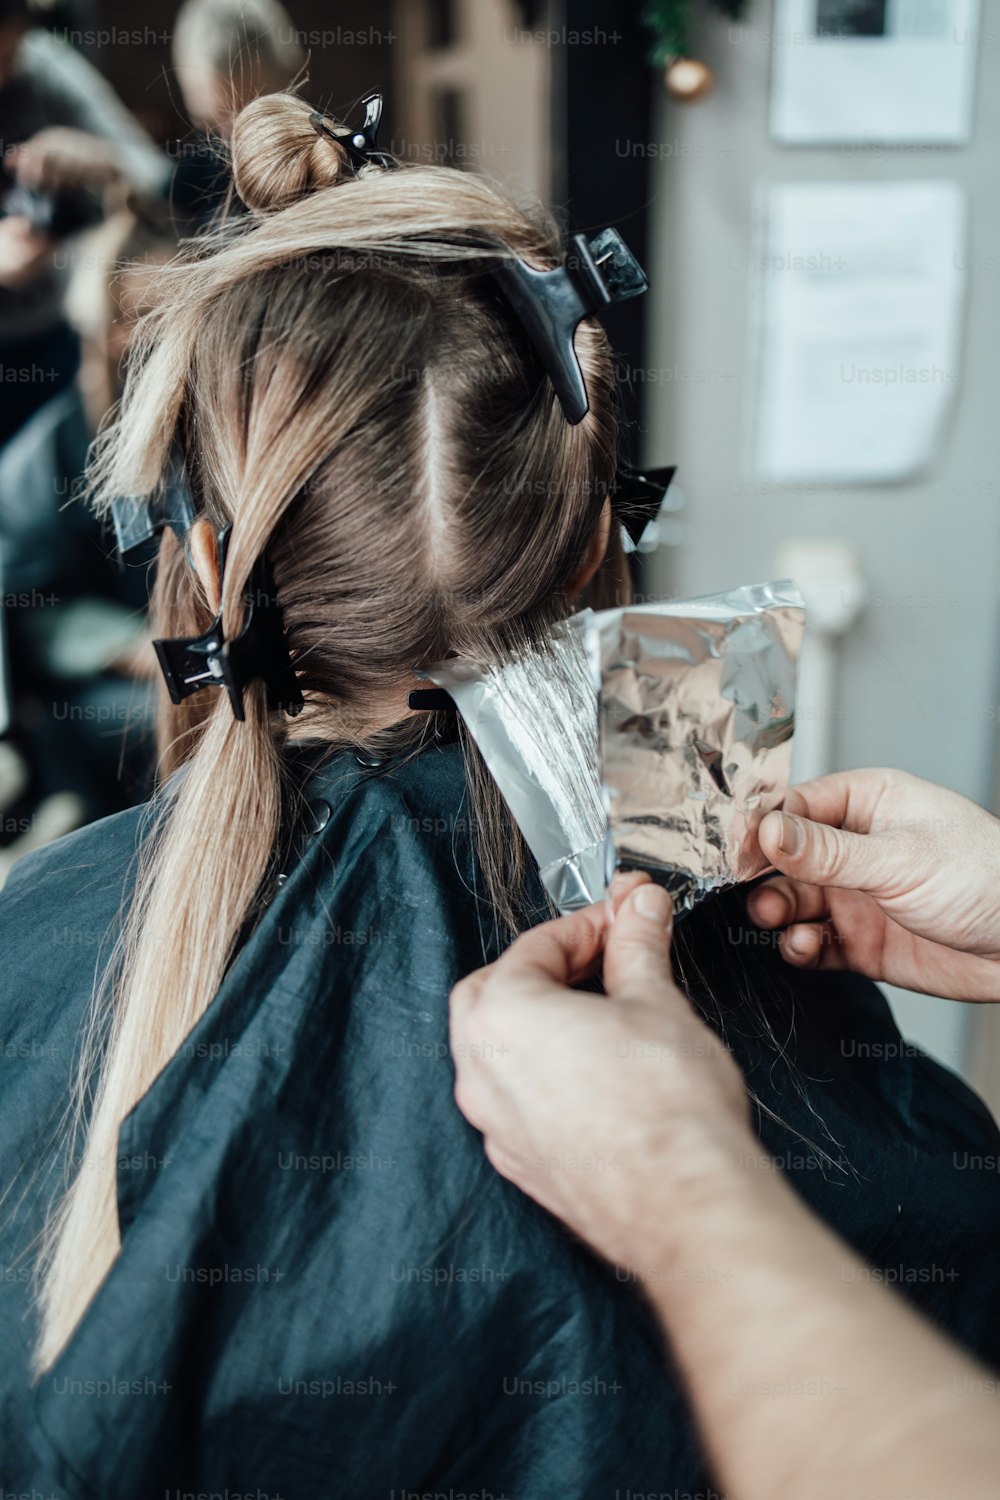 Le coiffeur teint les cheveux féminins, faisant des mèches de cheveux à sa cliente avec une feuille d’aluminium. Ils portent un masque de protection pour se protéger contre la pandémie de virus.